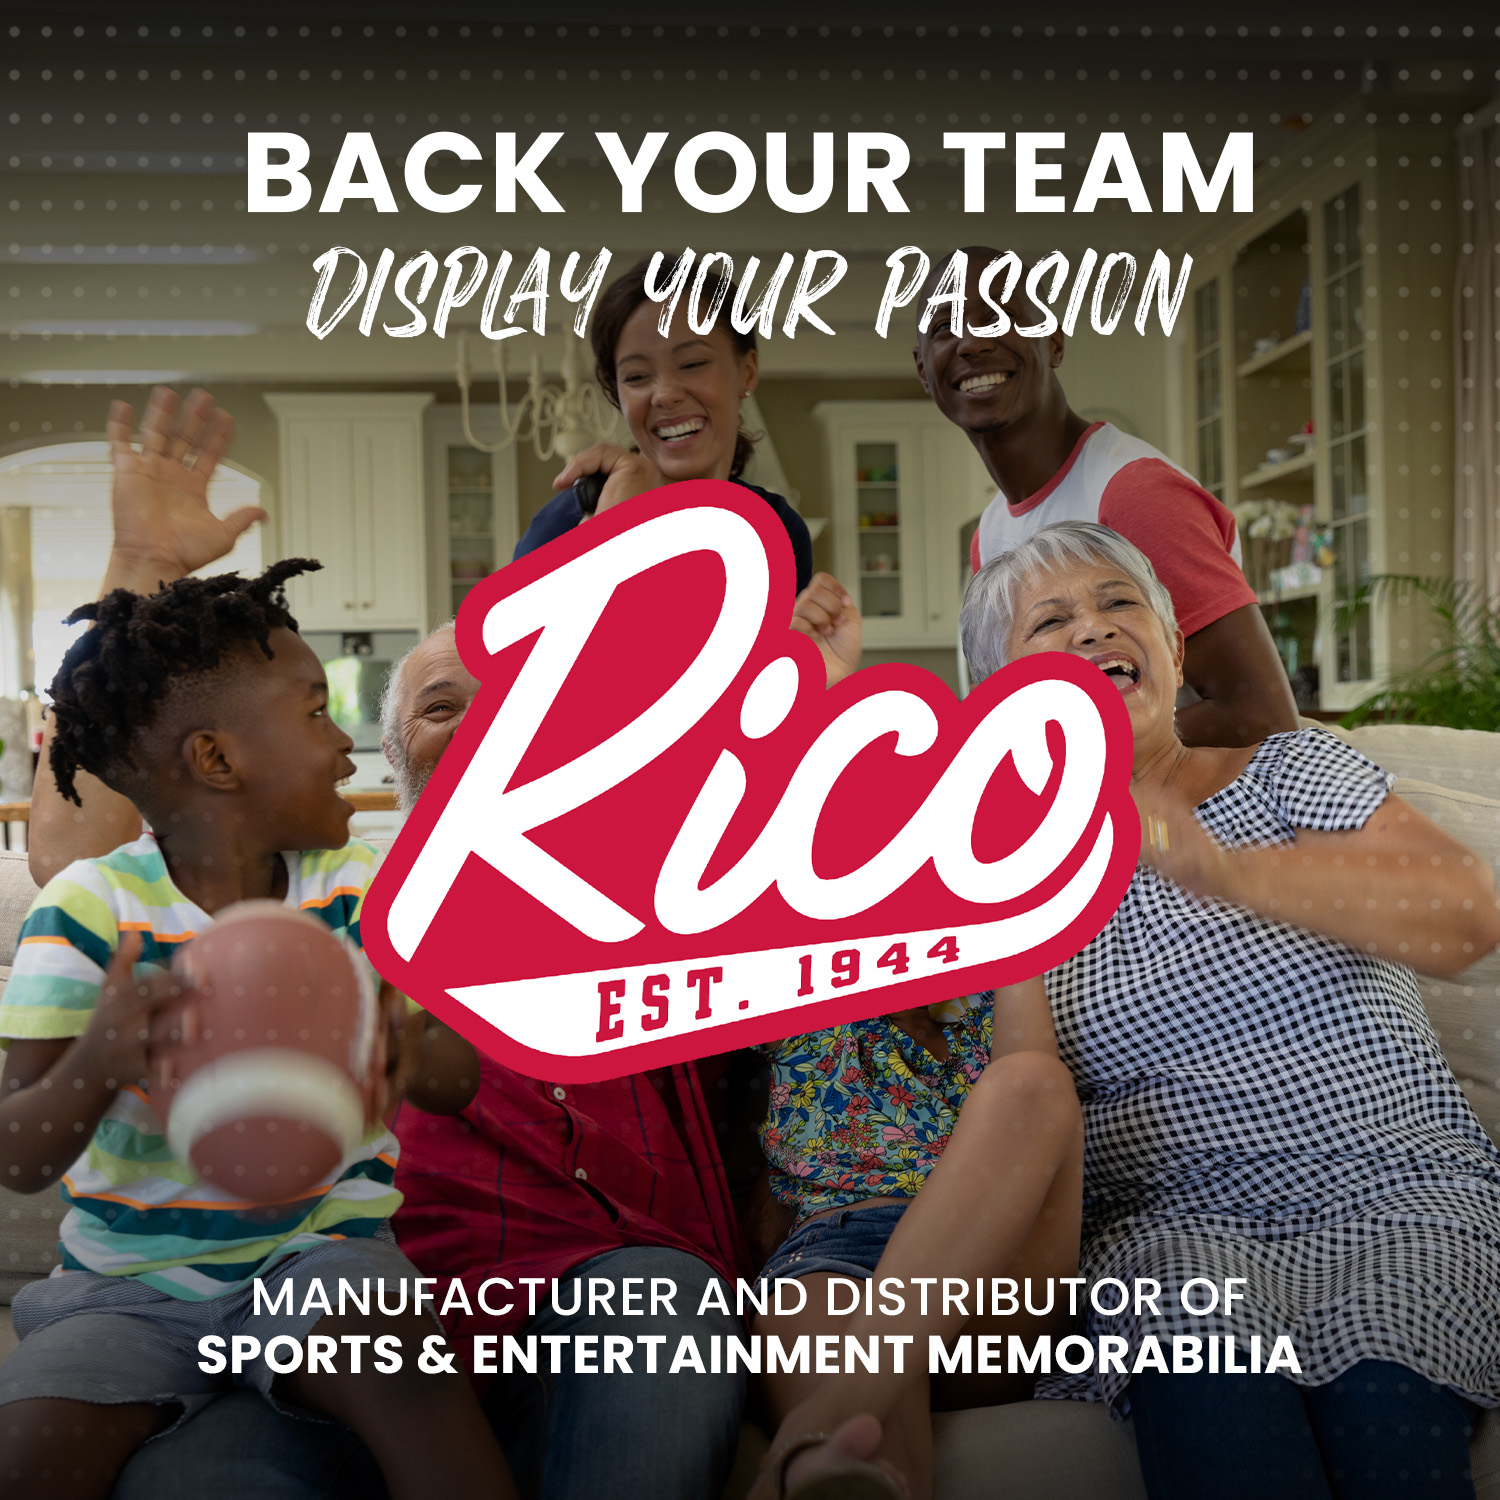 Rico NBA Rico Industries Chicago Bulls  Pennant